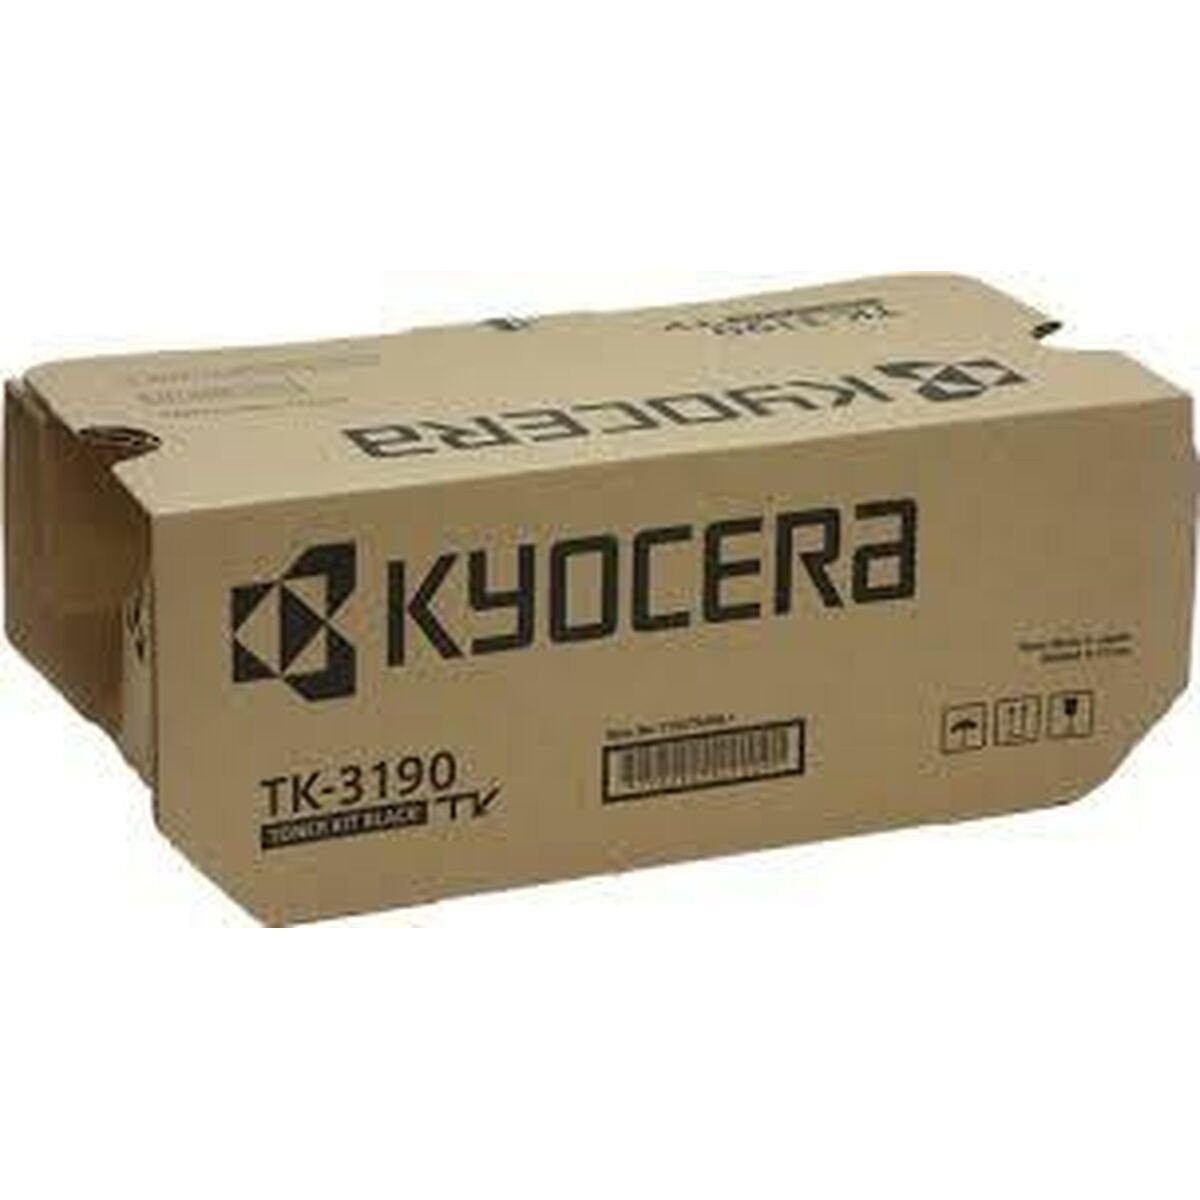 Kyocera Laserdrucker Toner Kyocera TK-3190 Schwarz Tintenpatrone